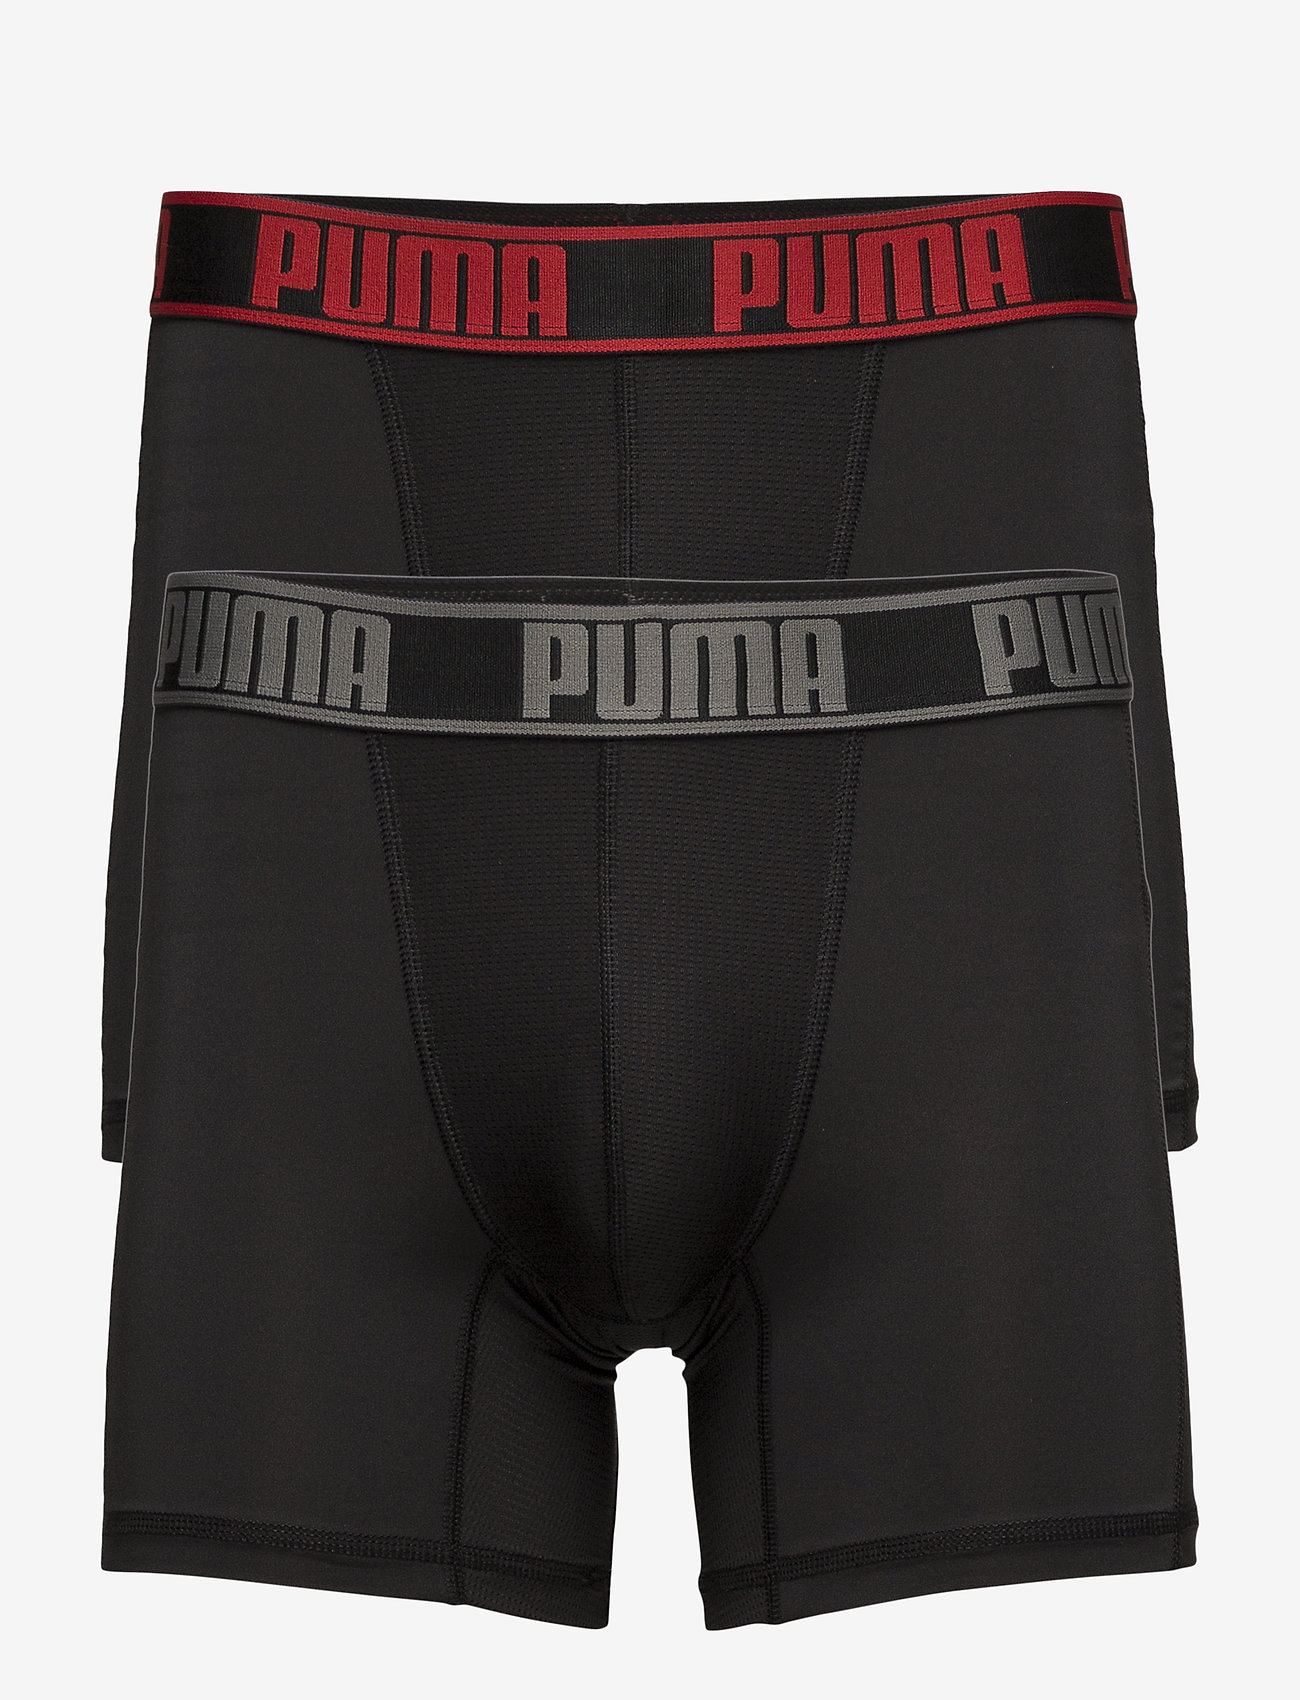 puma boxers xxl